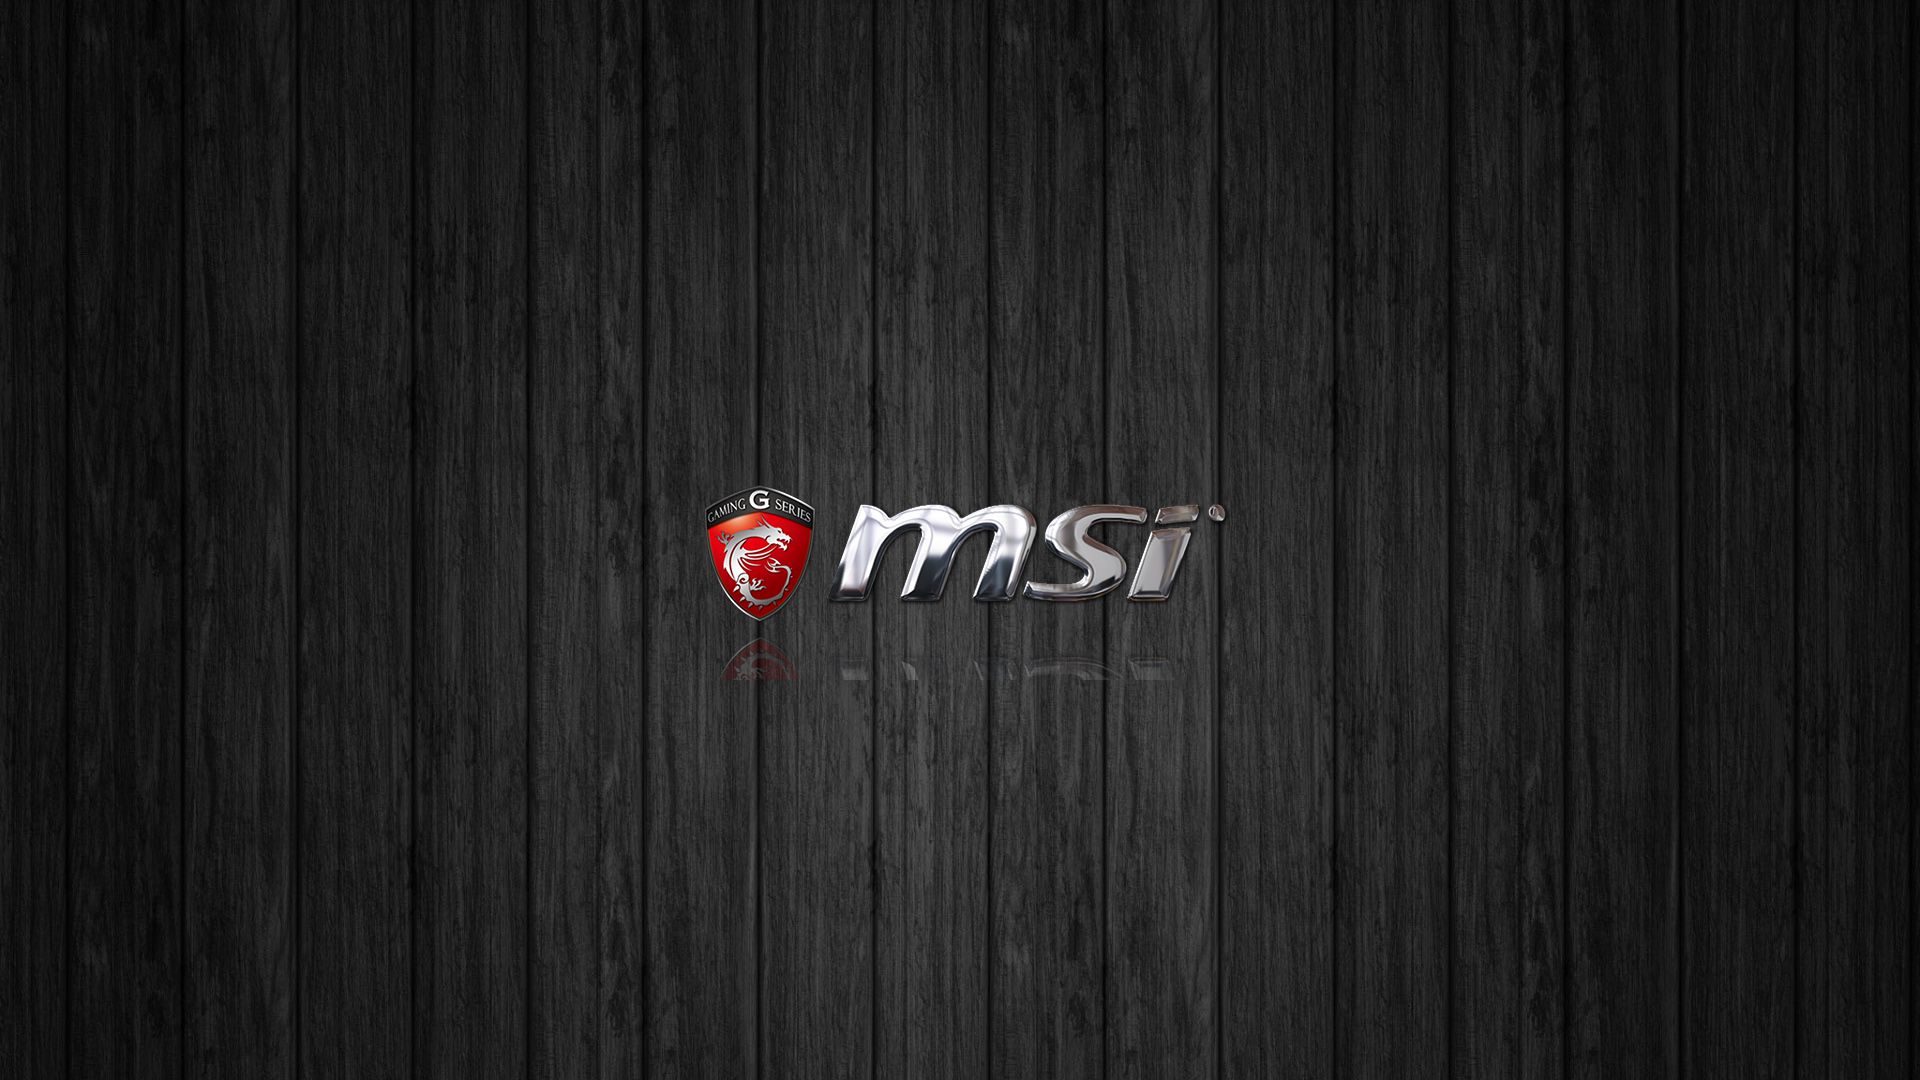 MSI Wallpaper. MSI Red Wallpaper, MSI Gaming Wallpaper and MSI Motherboard Wallpaper